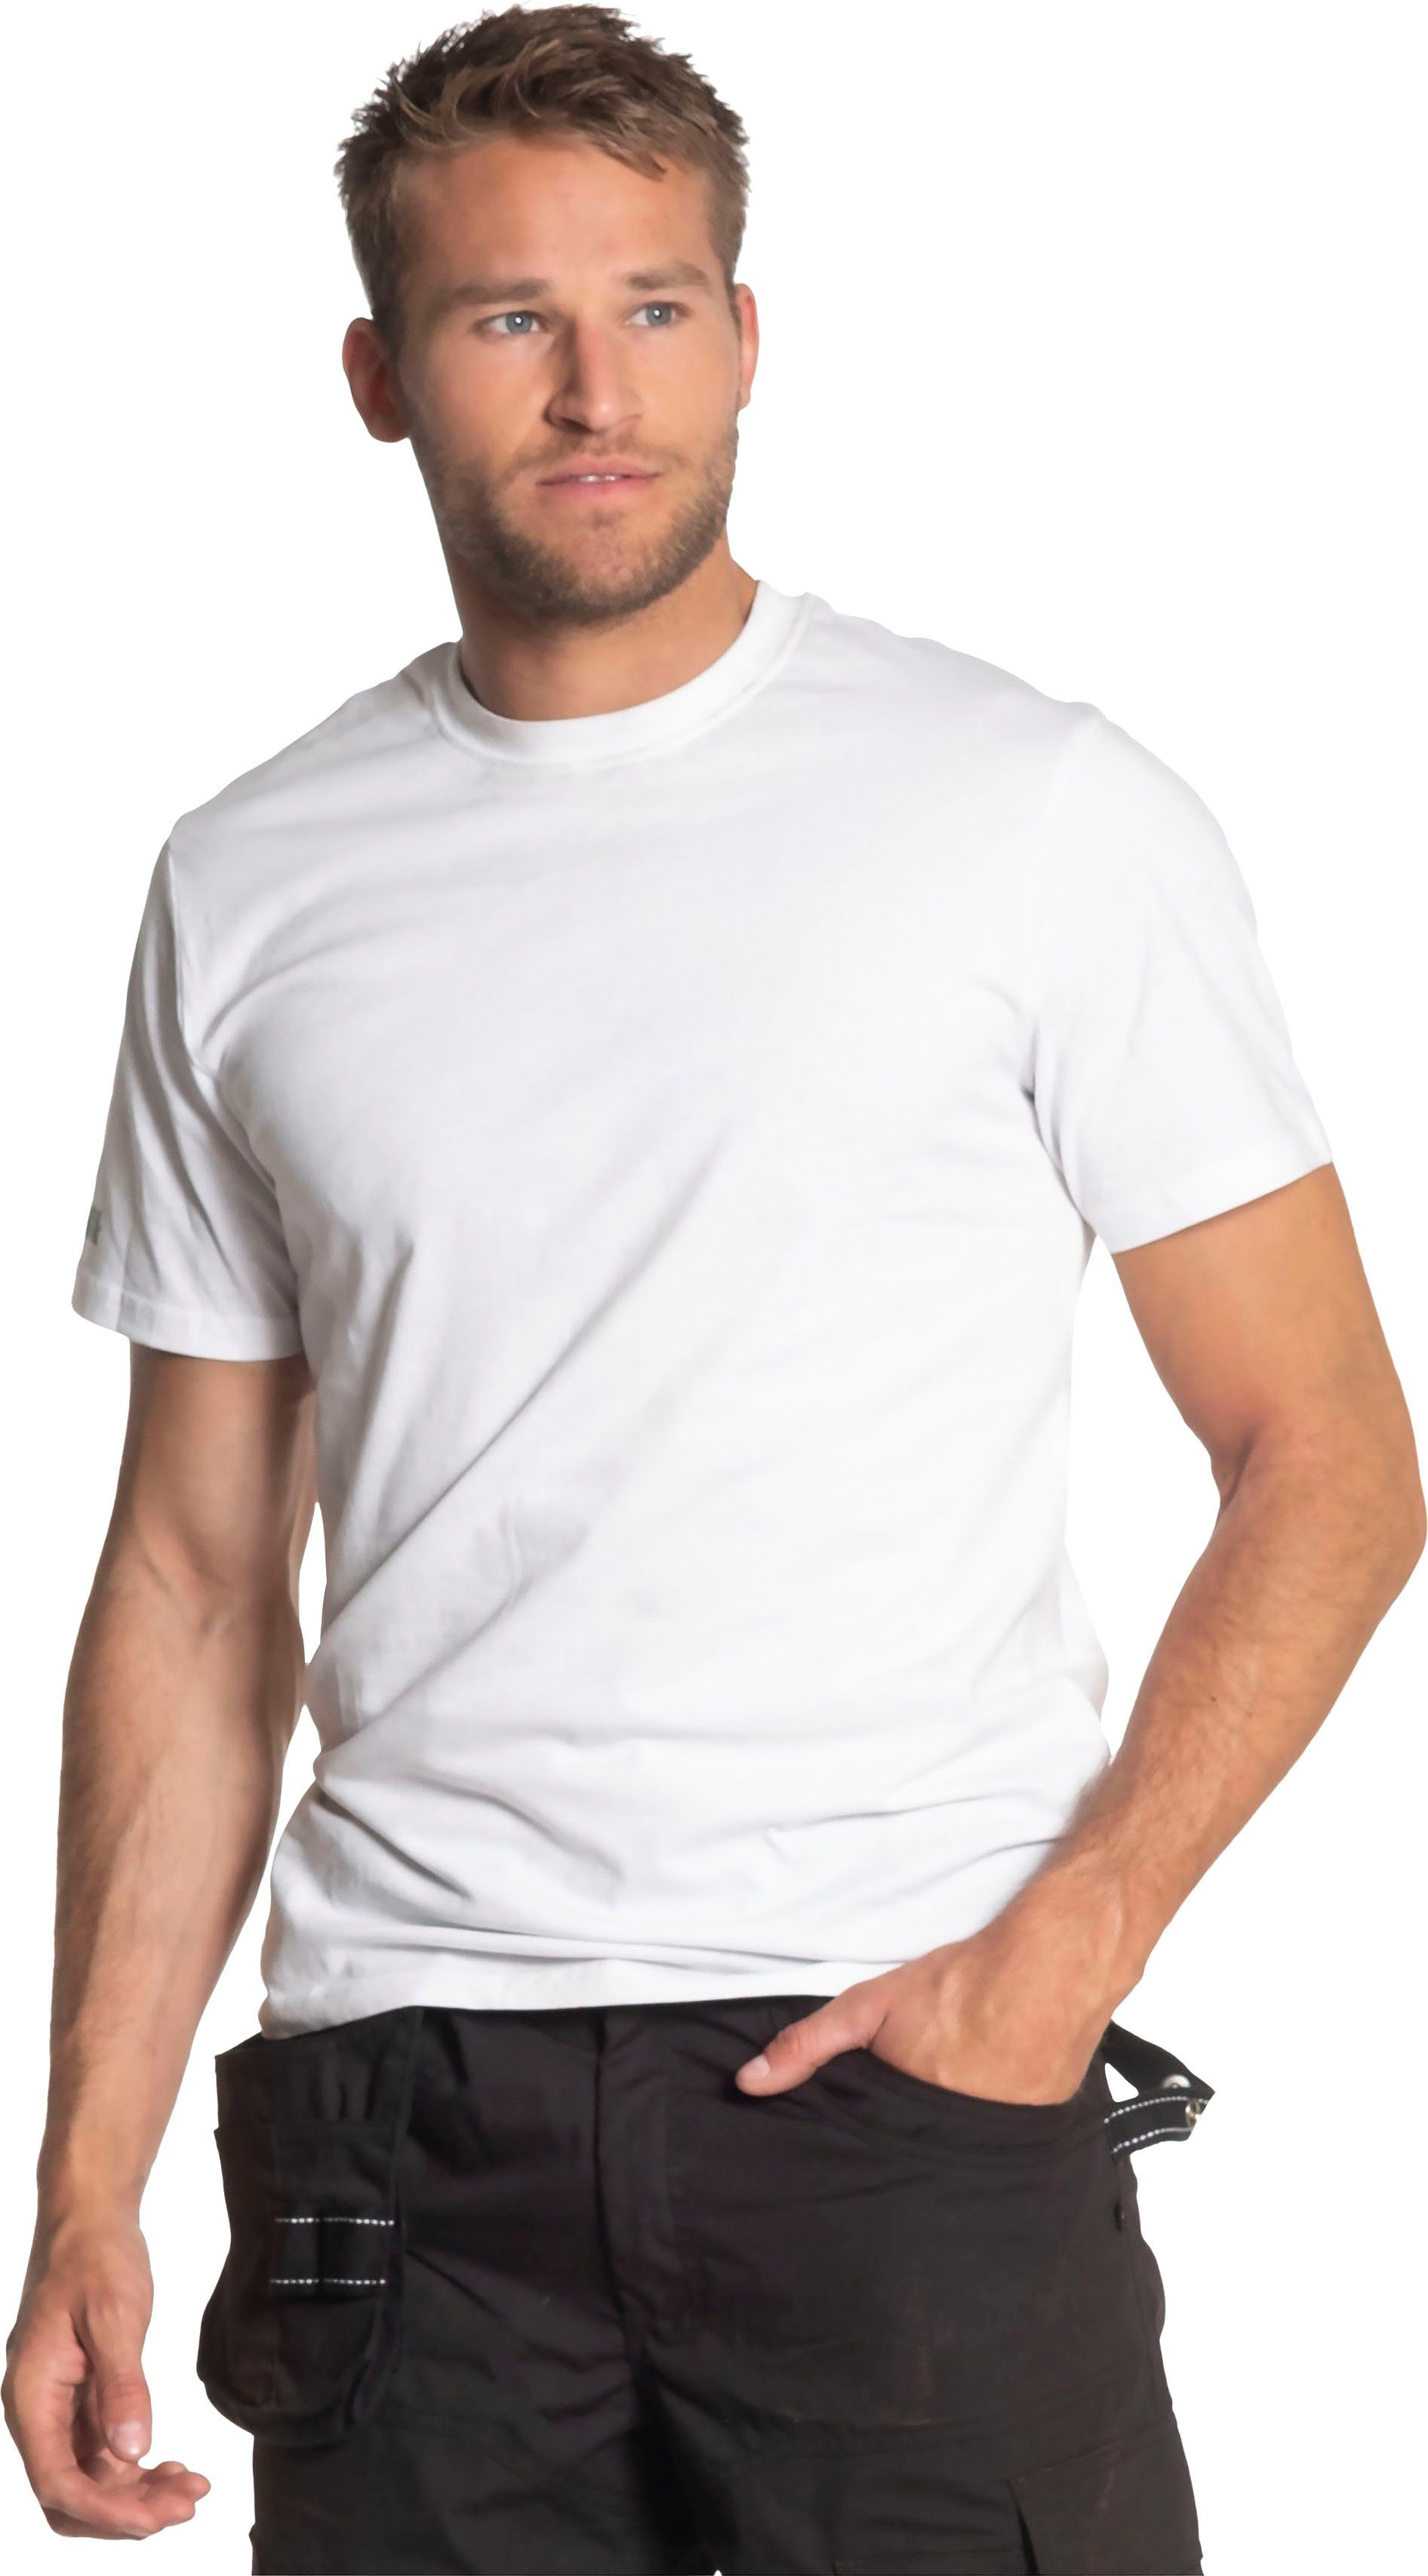 Ärmel kurze Herock kurze Rippstrickkragen Herock®-Aufdruck, T-Shirt Callius T-Shirt weiß Rundhalsausschnitt, Ärmel,